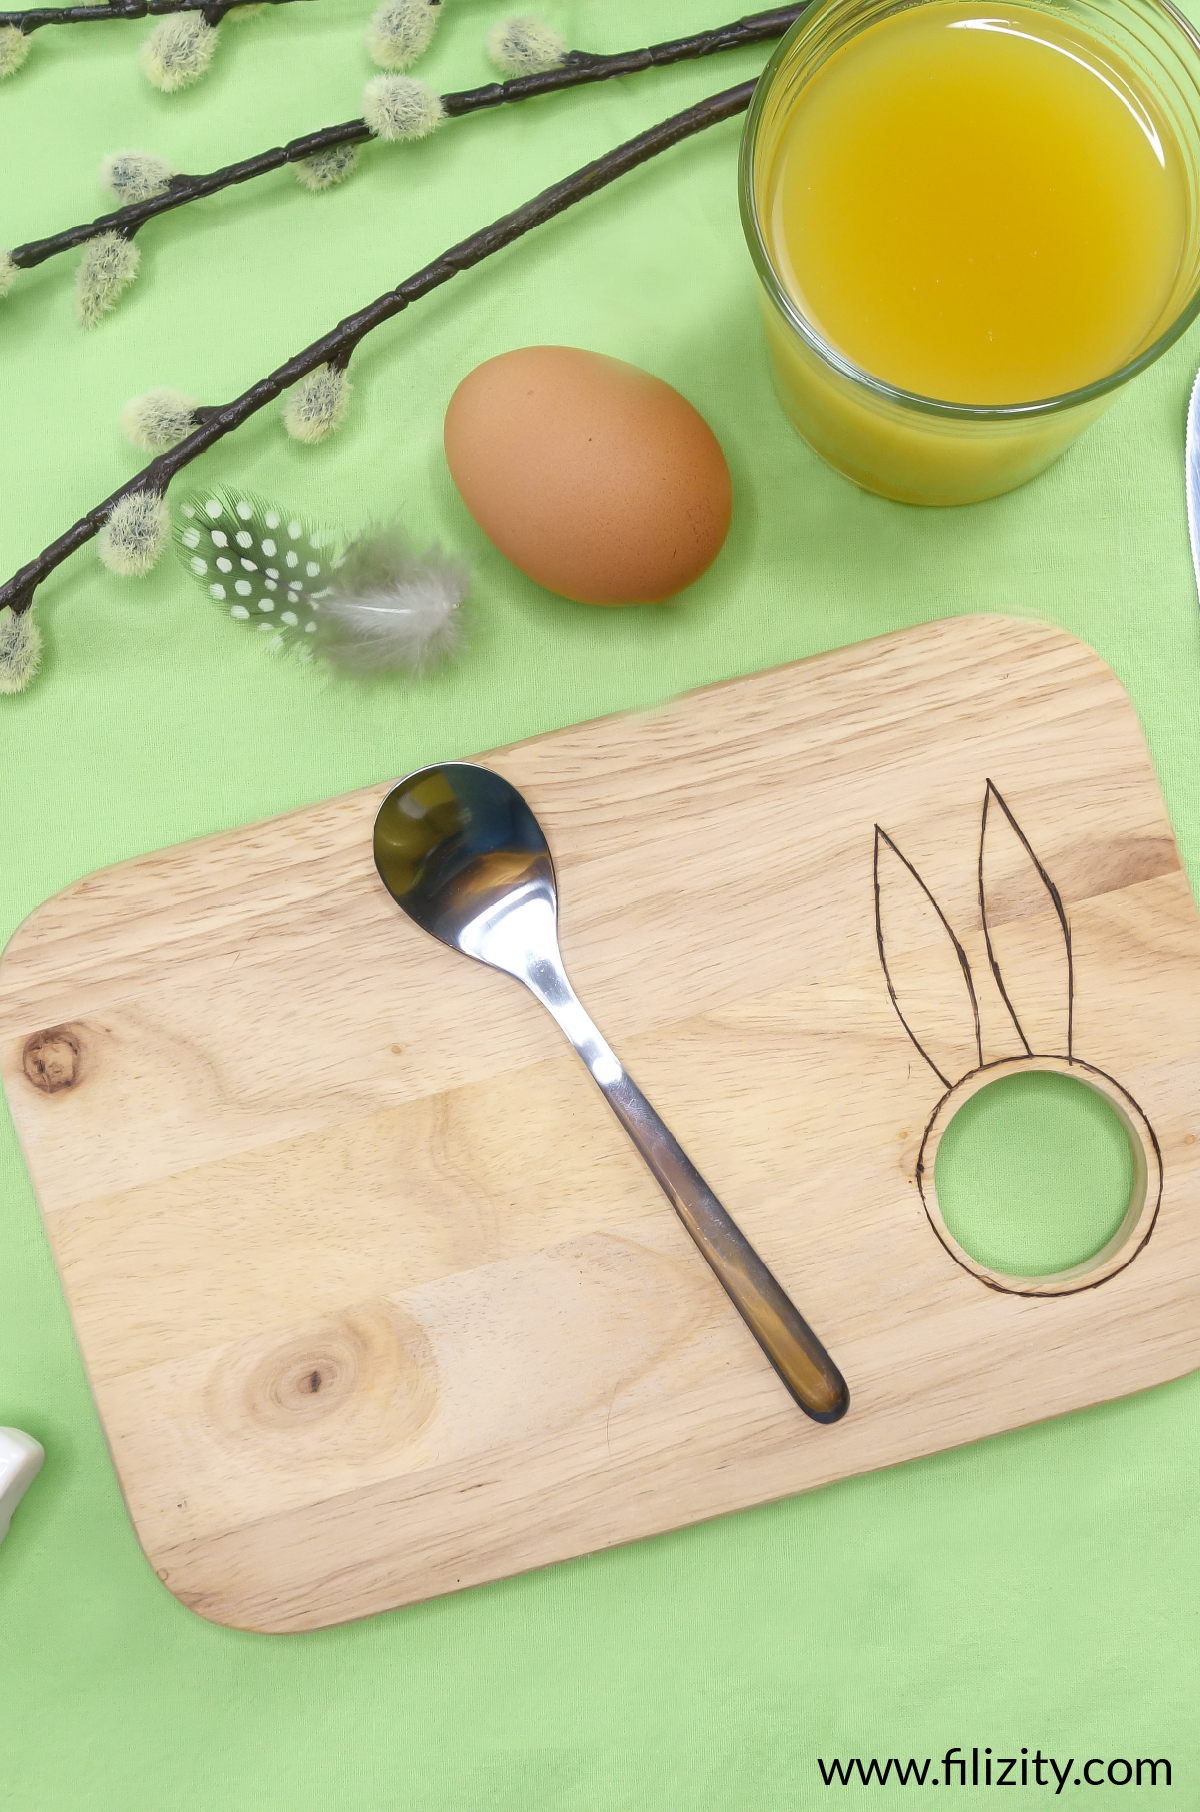 DIY: Osterhasen-Frühstücksbrett selber machen - Tolle DIY Idee für den Osterbrunch | Filizity.com - Kreativmagazin aus dem Rheinland #ostern #diy #osterbrunch